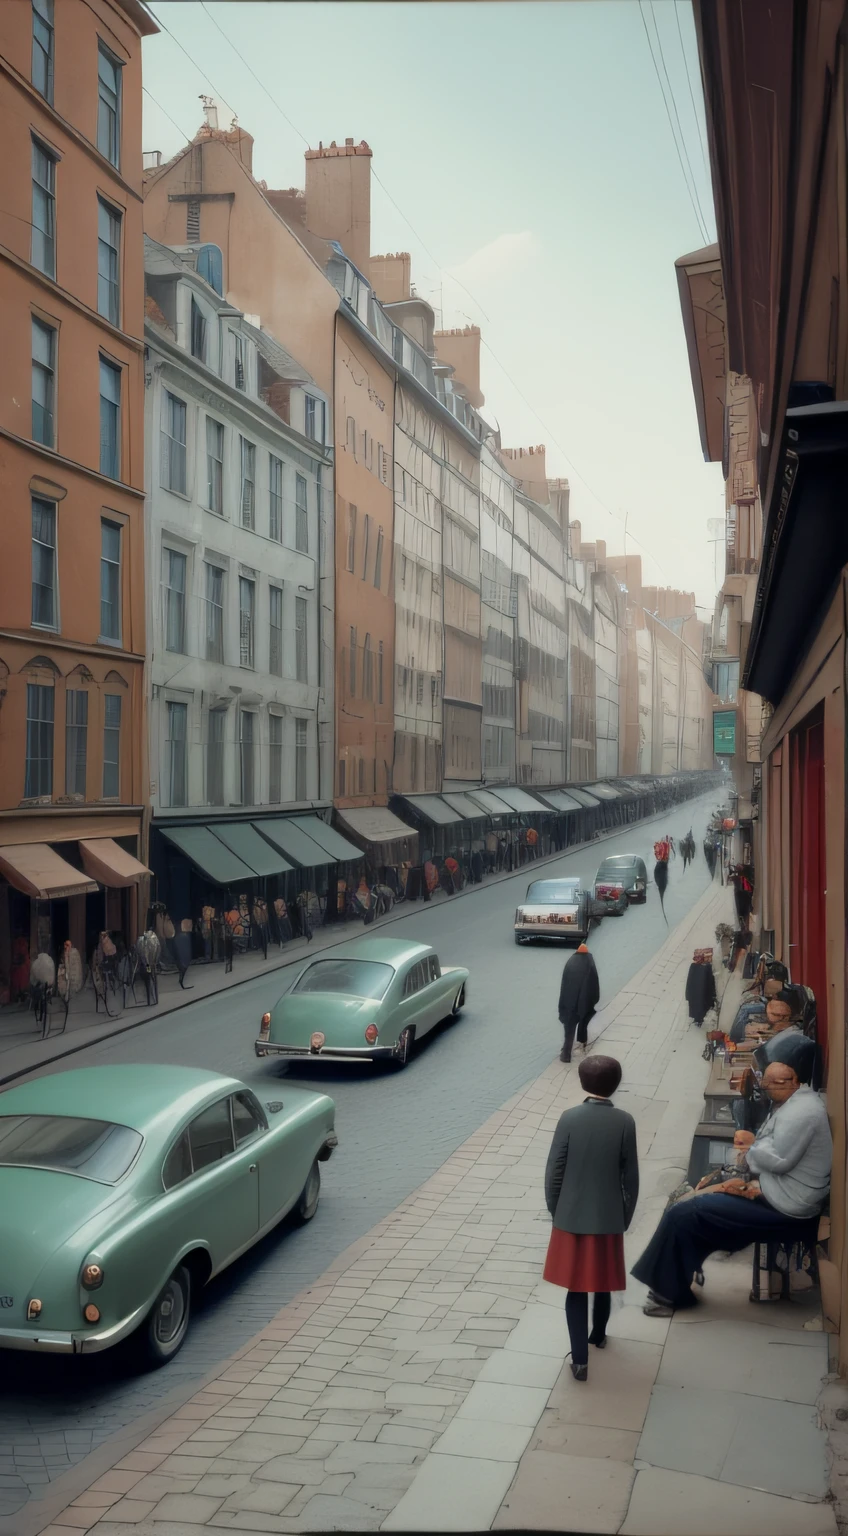 Динамичная уличная сцена, снятая Анри Картье-Брессоном., волнующий разговор о фотографиях Street View.